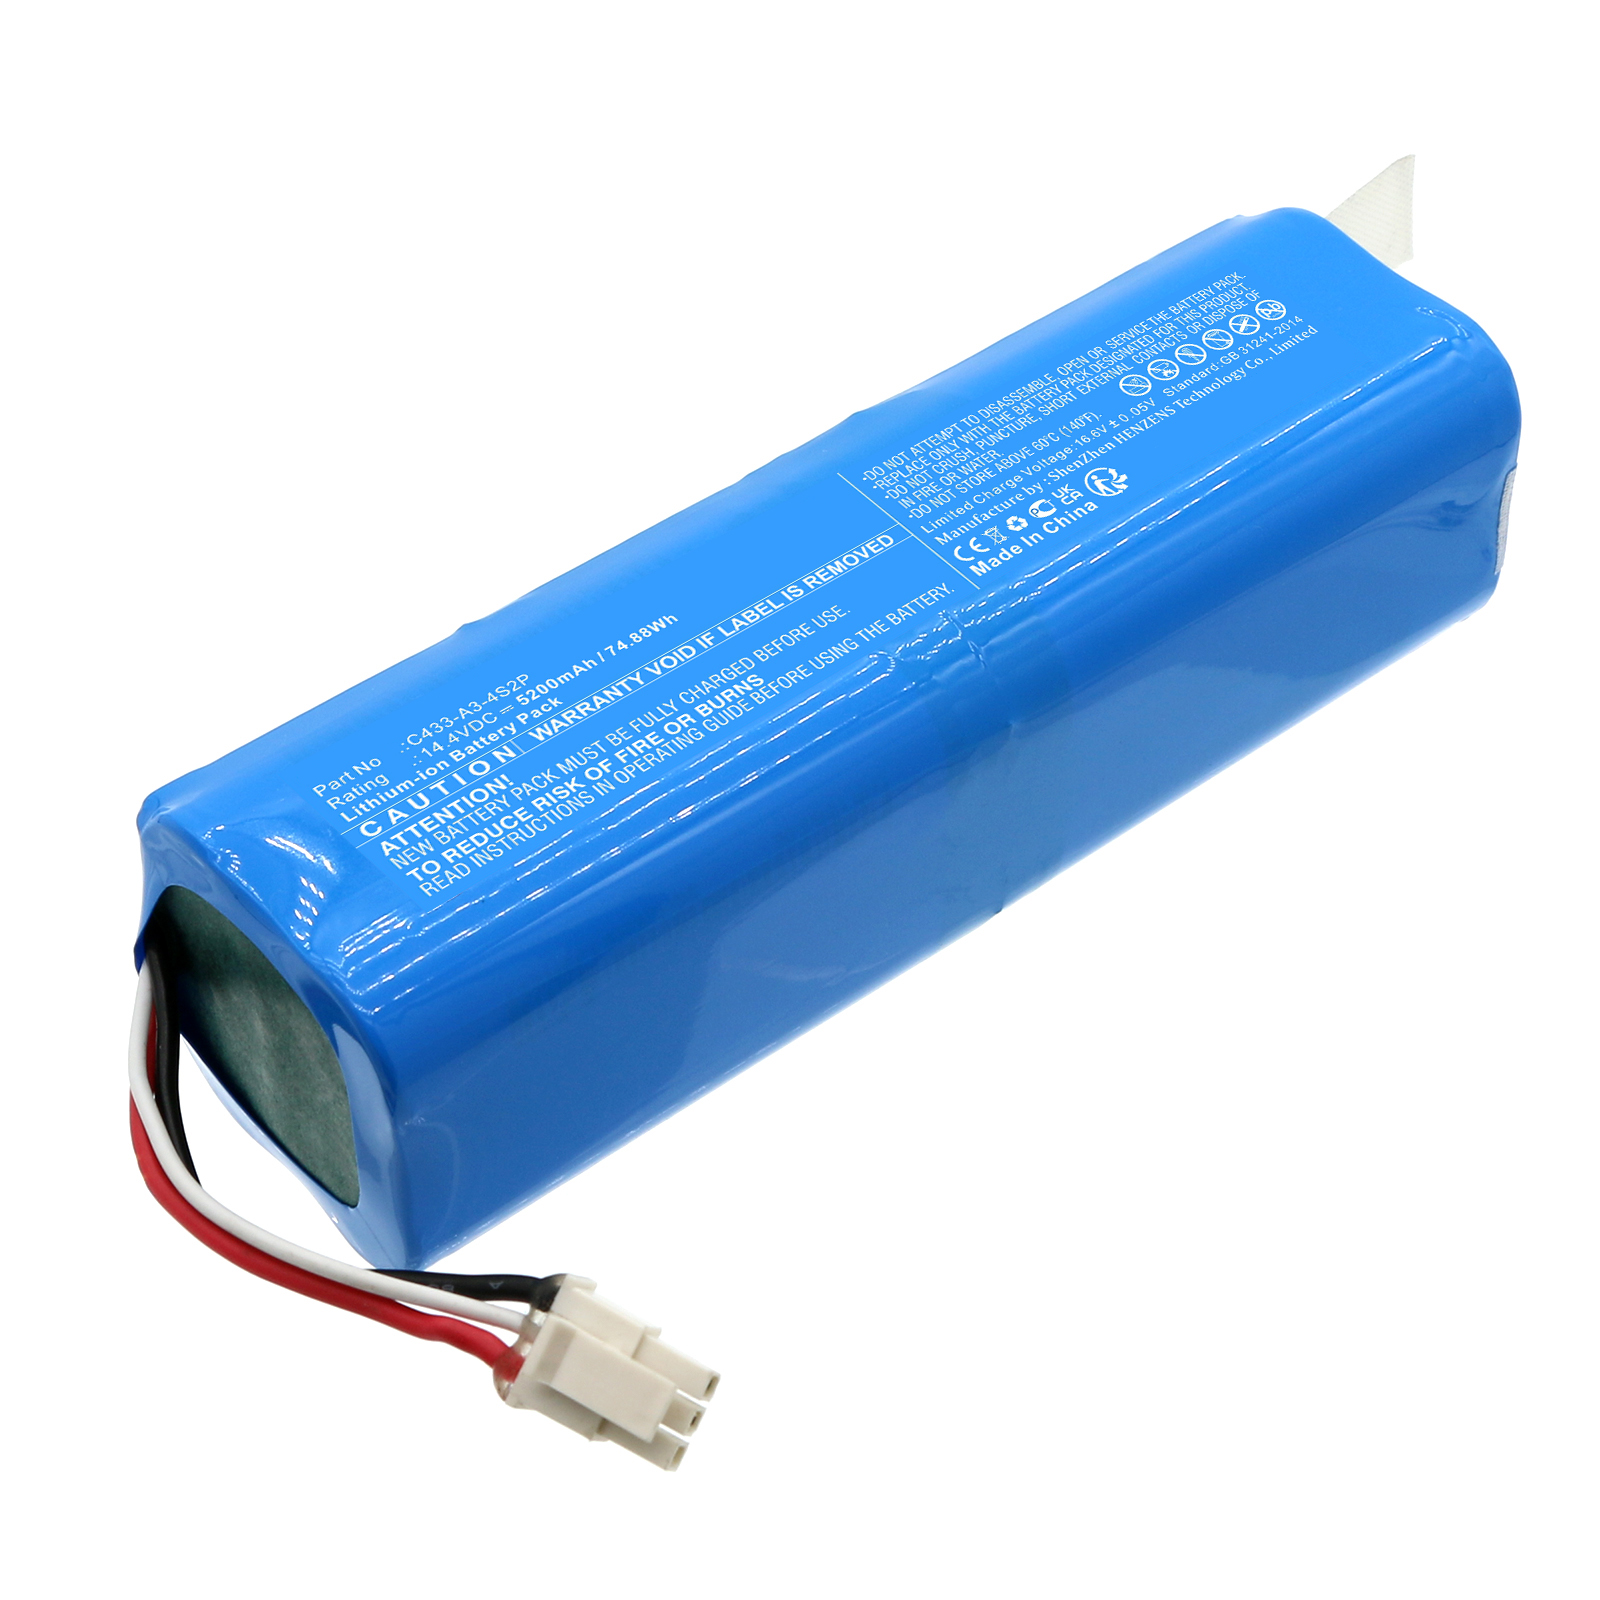 Synergy Digital Vacuum Cleaner Battery, Compatible with Neabot C1048A2 Vacuum Cleaner Battery (Li-ion, 14.4V, 5200mAh)